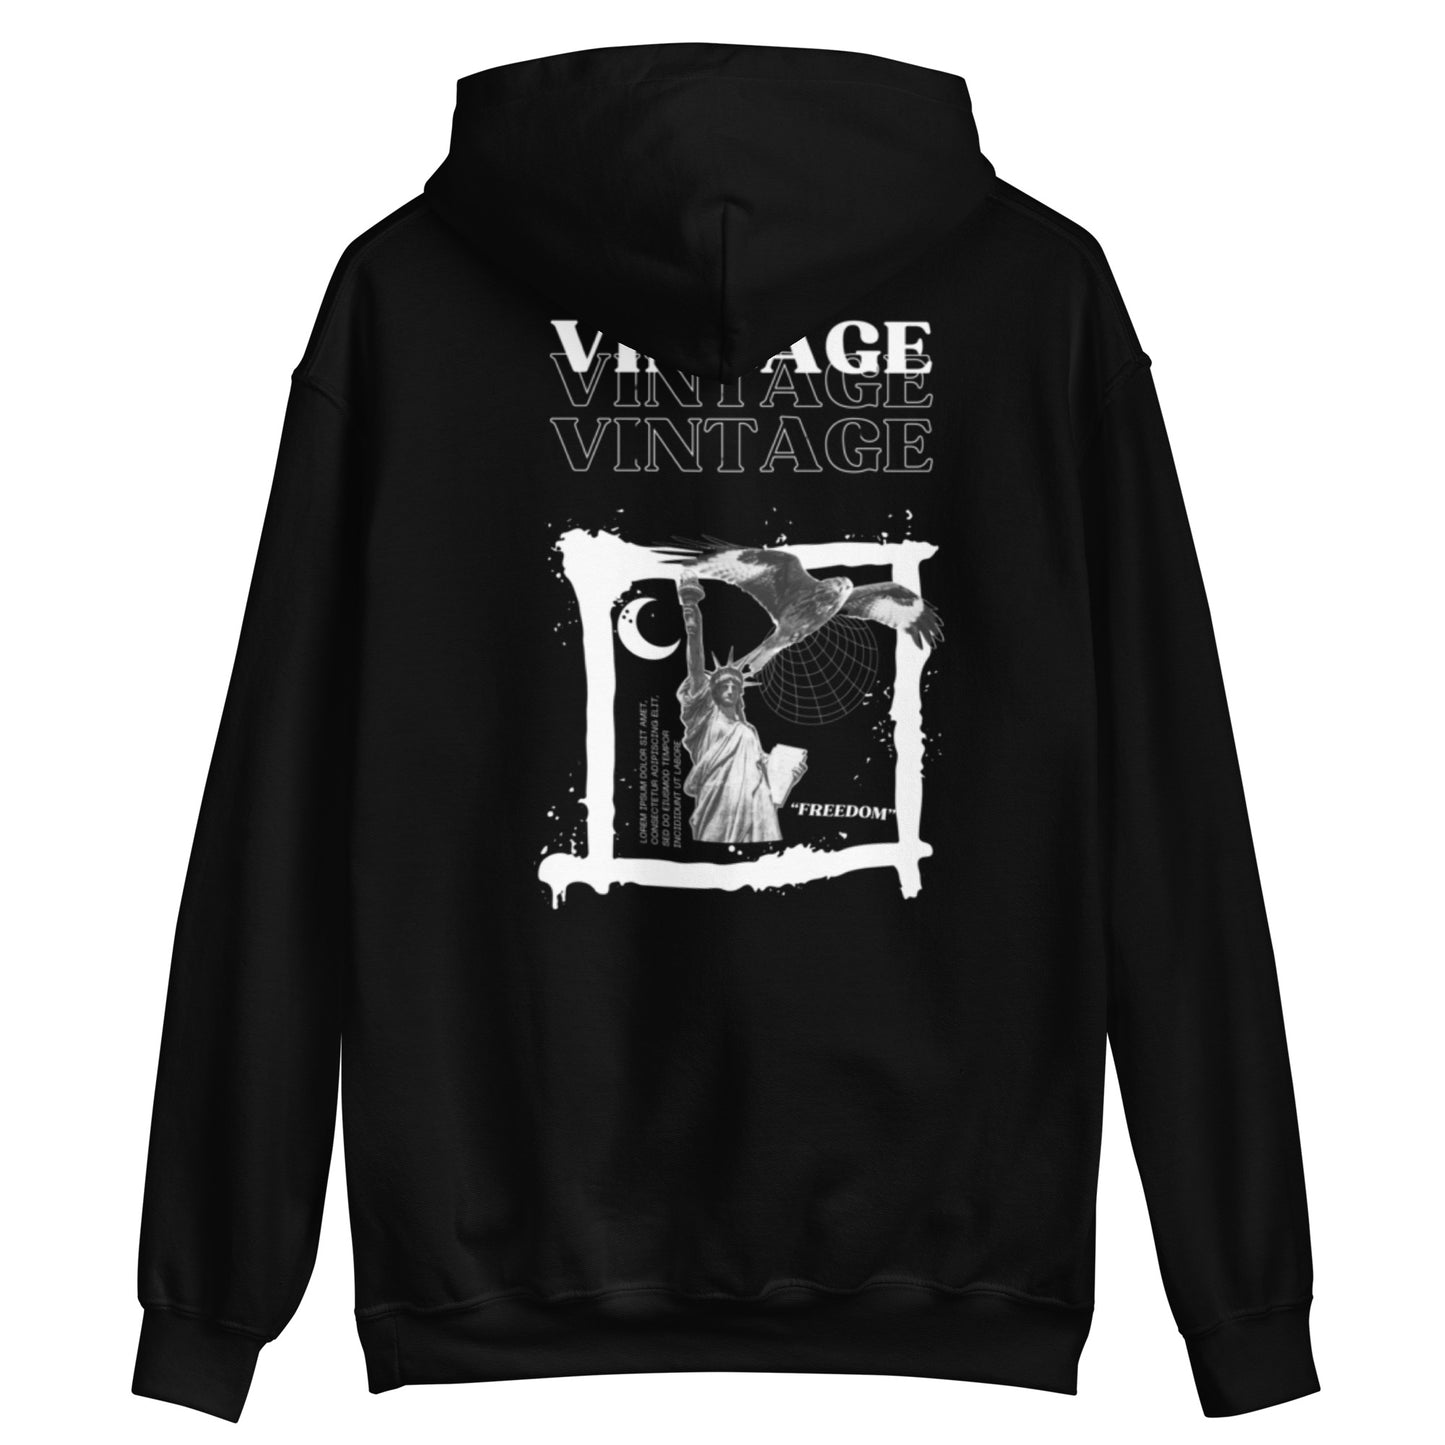 "VINTAGE" heavy hoodie